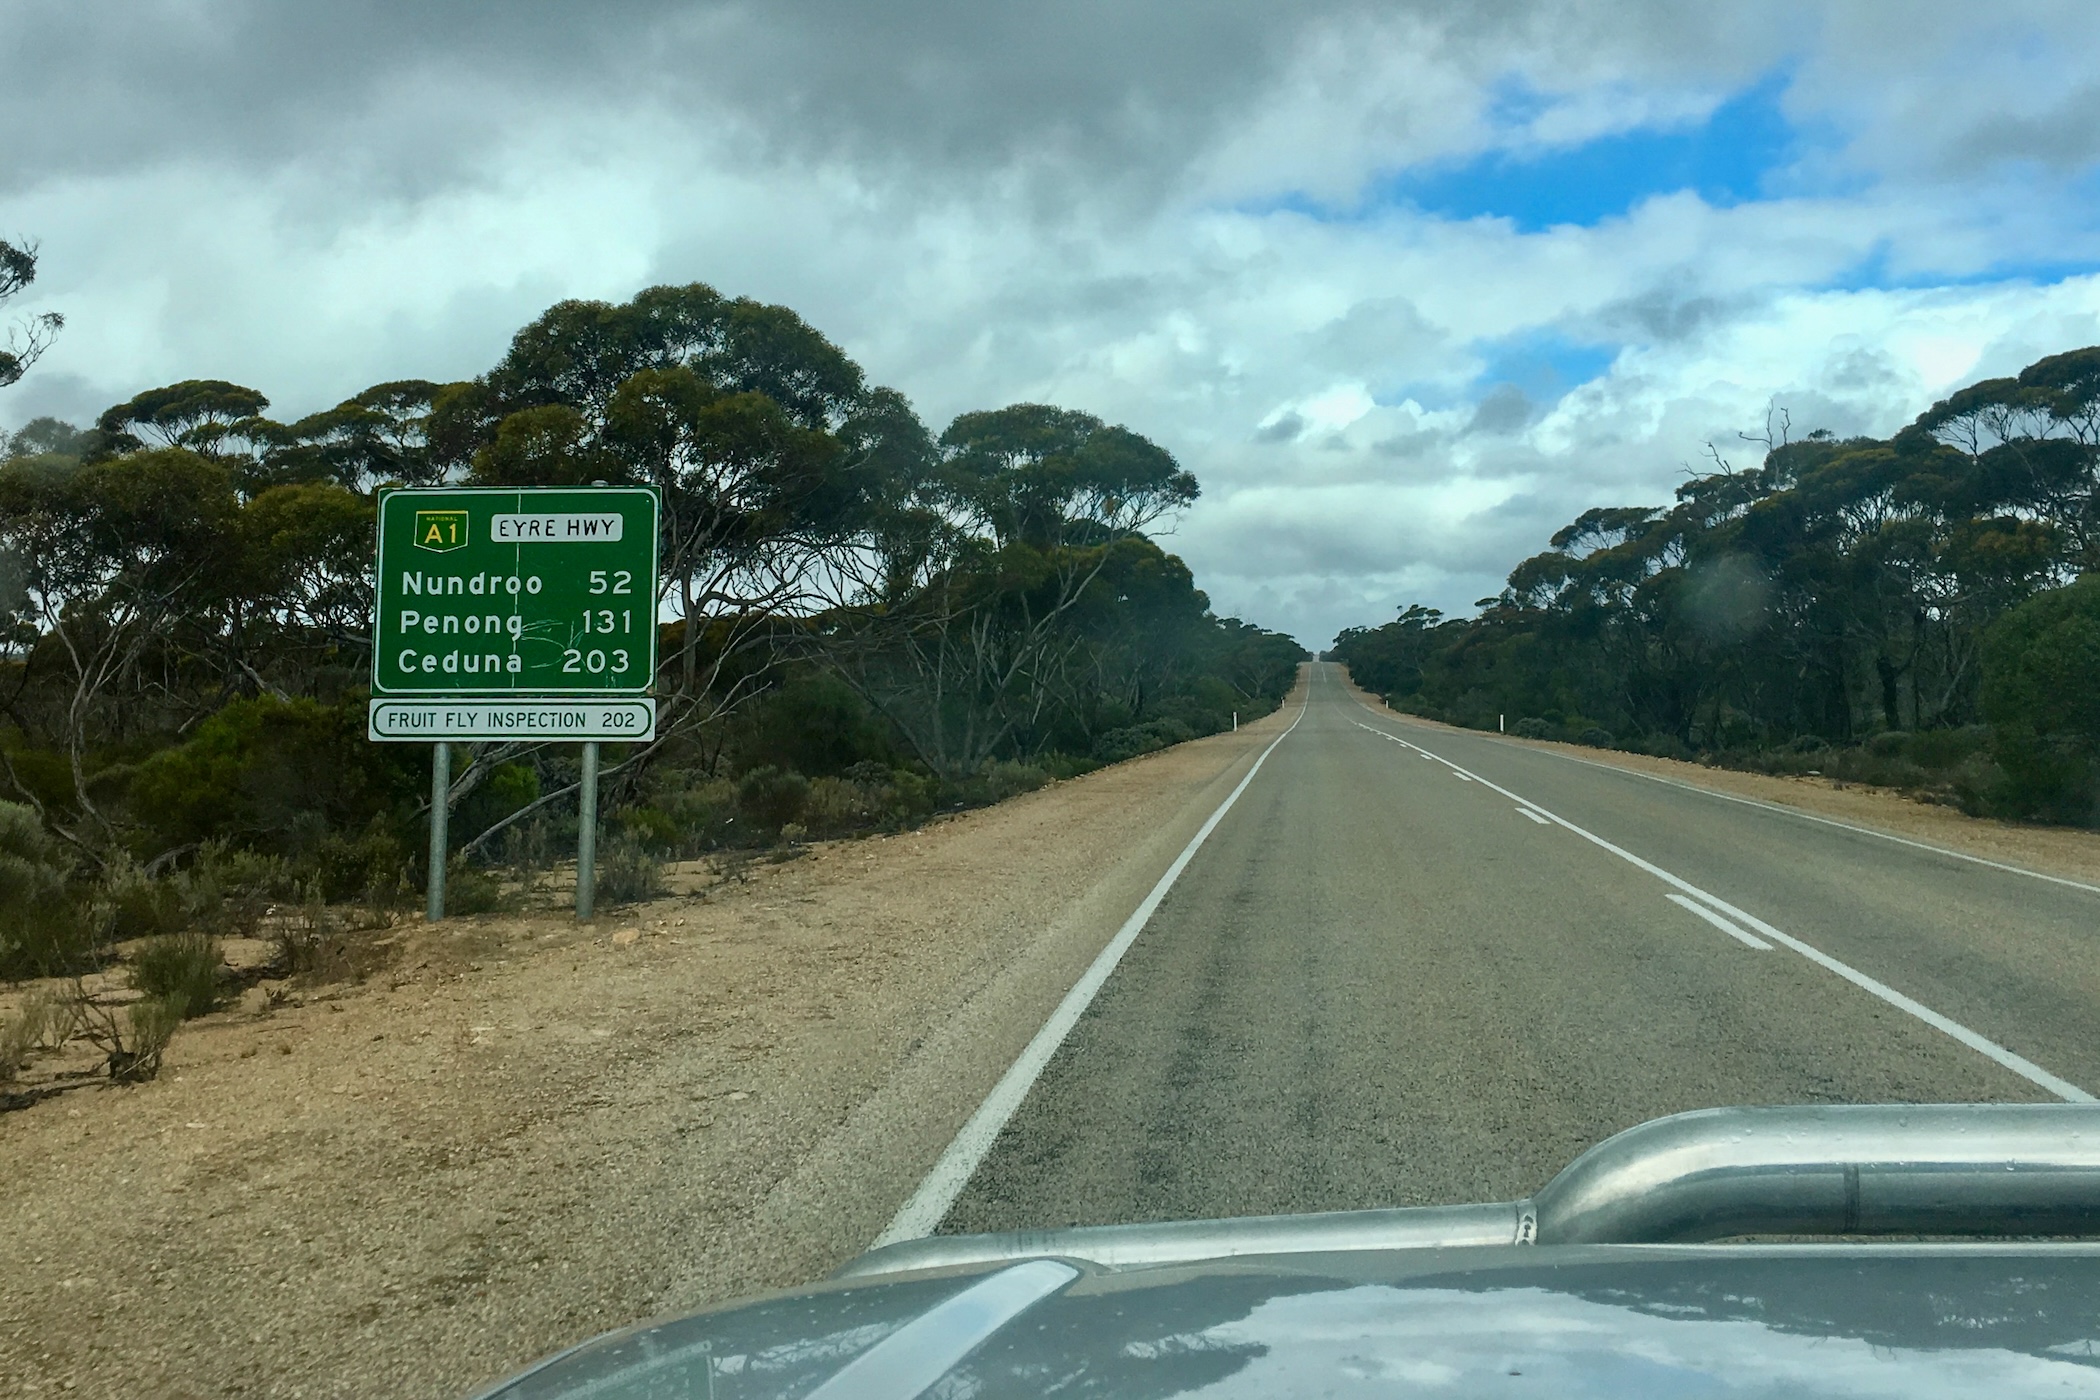 De Nullabor Plain oversteken een iconische roadtrip in Zuid-Australie